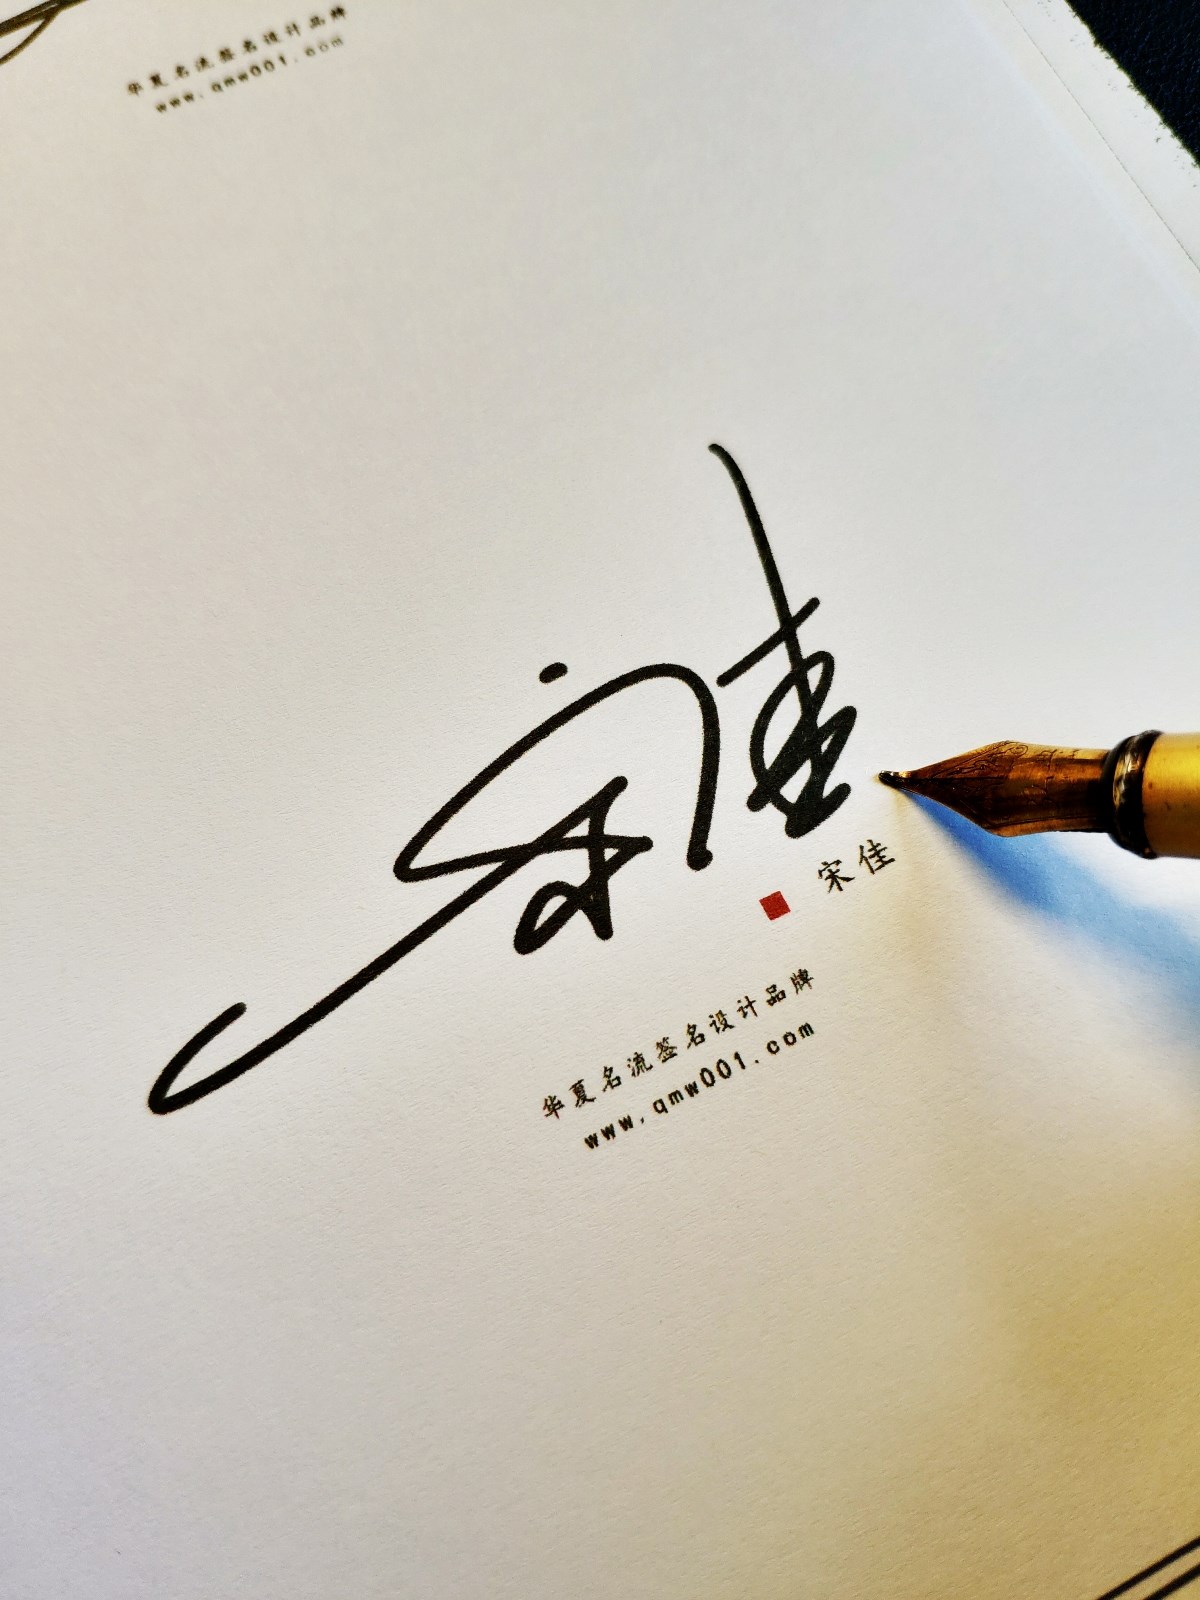 艺术签名丨签名设计丨艺术签名设计